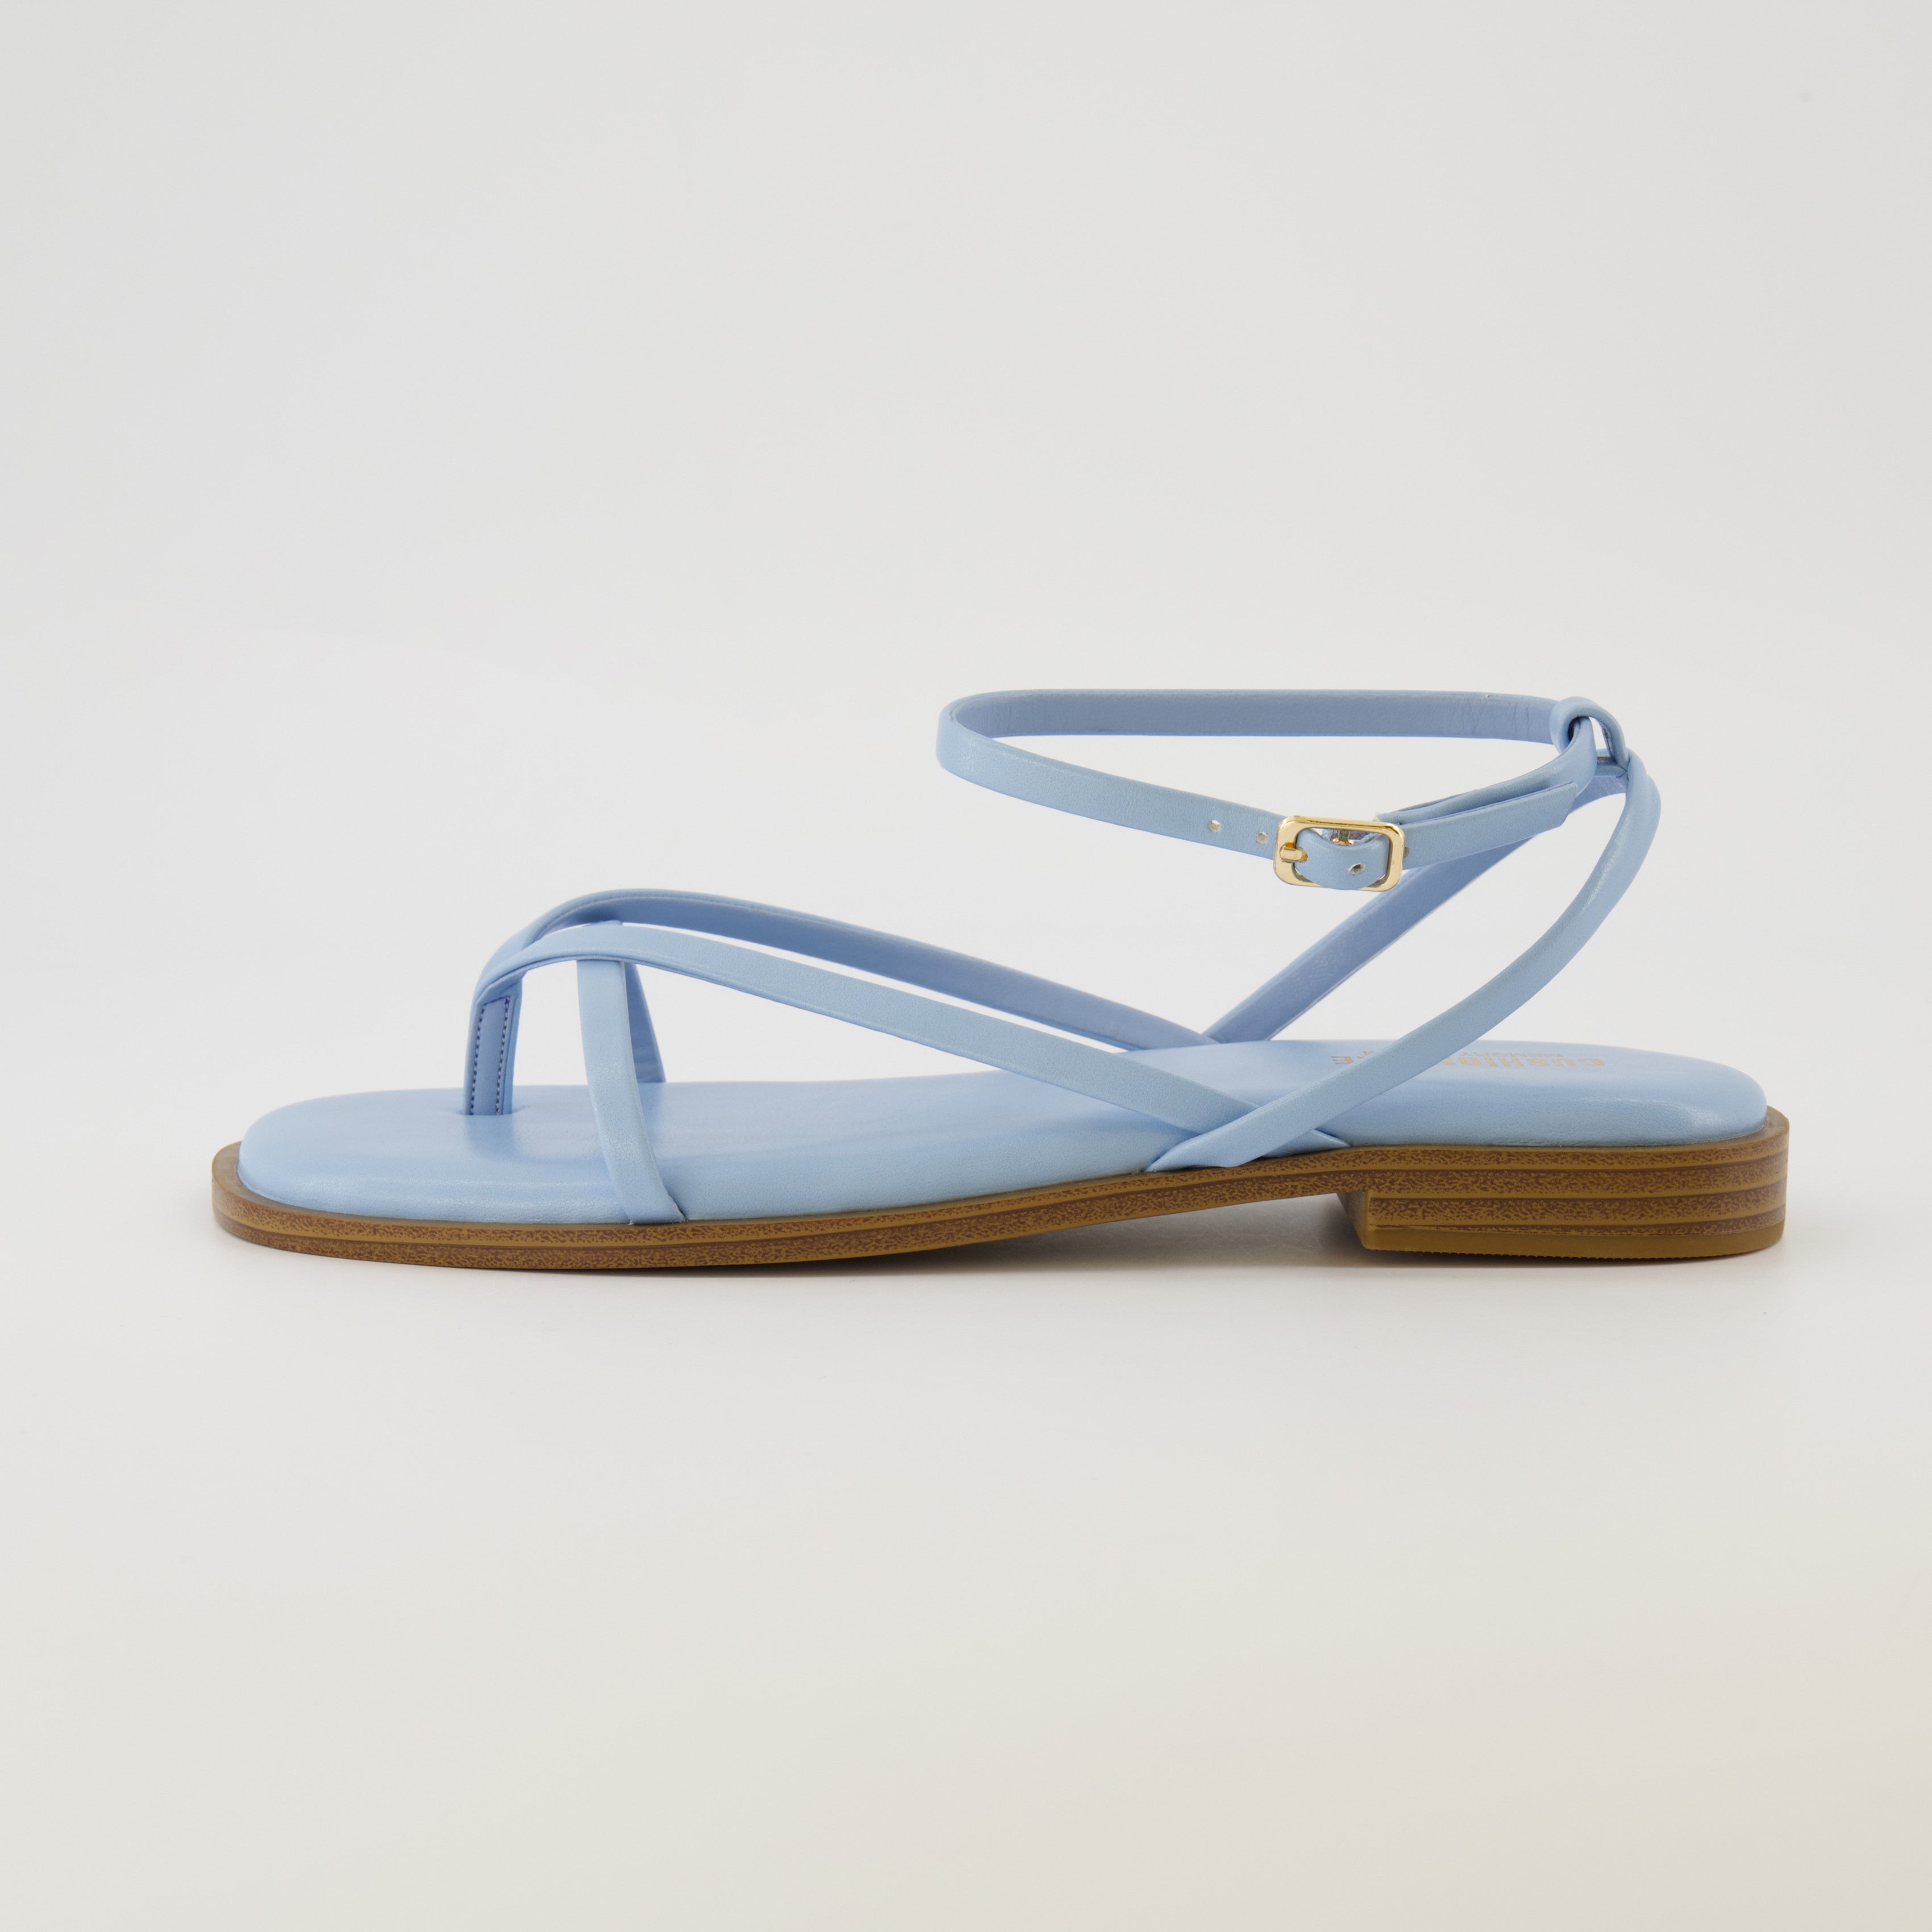 Cethrio Womens Summer Comfort Flats Sandals- Flat Beach Strap